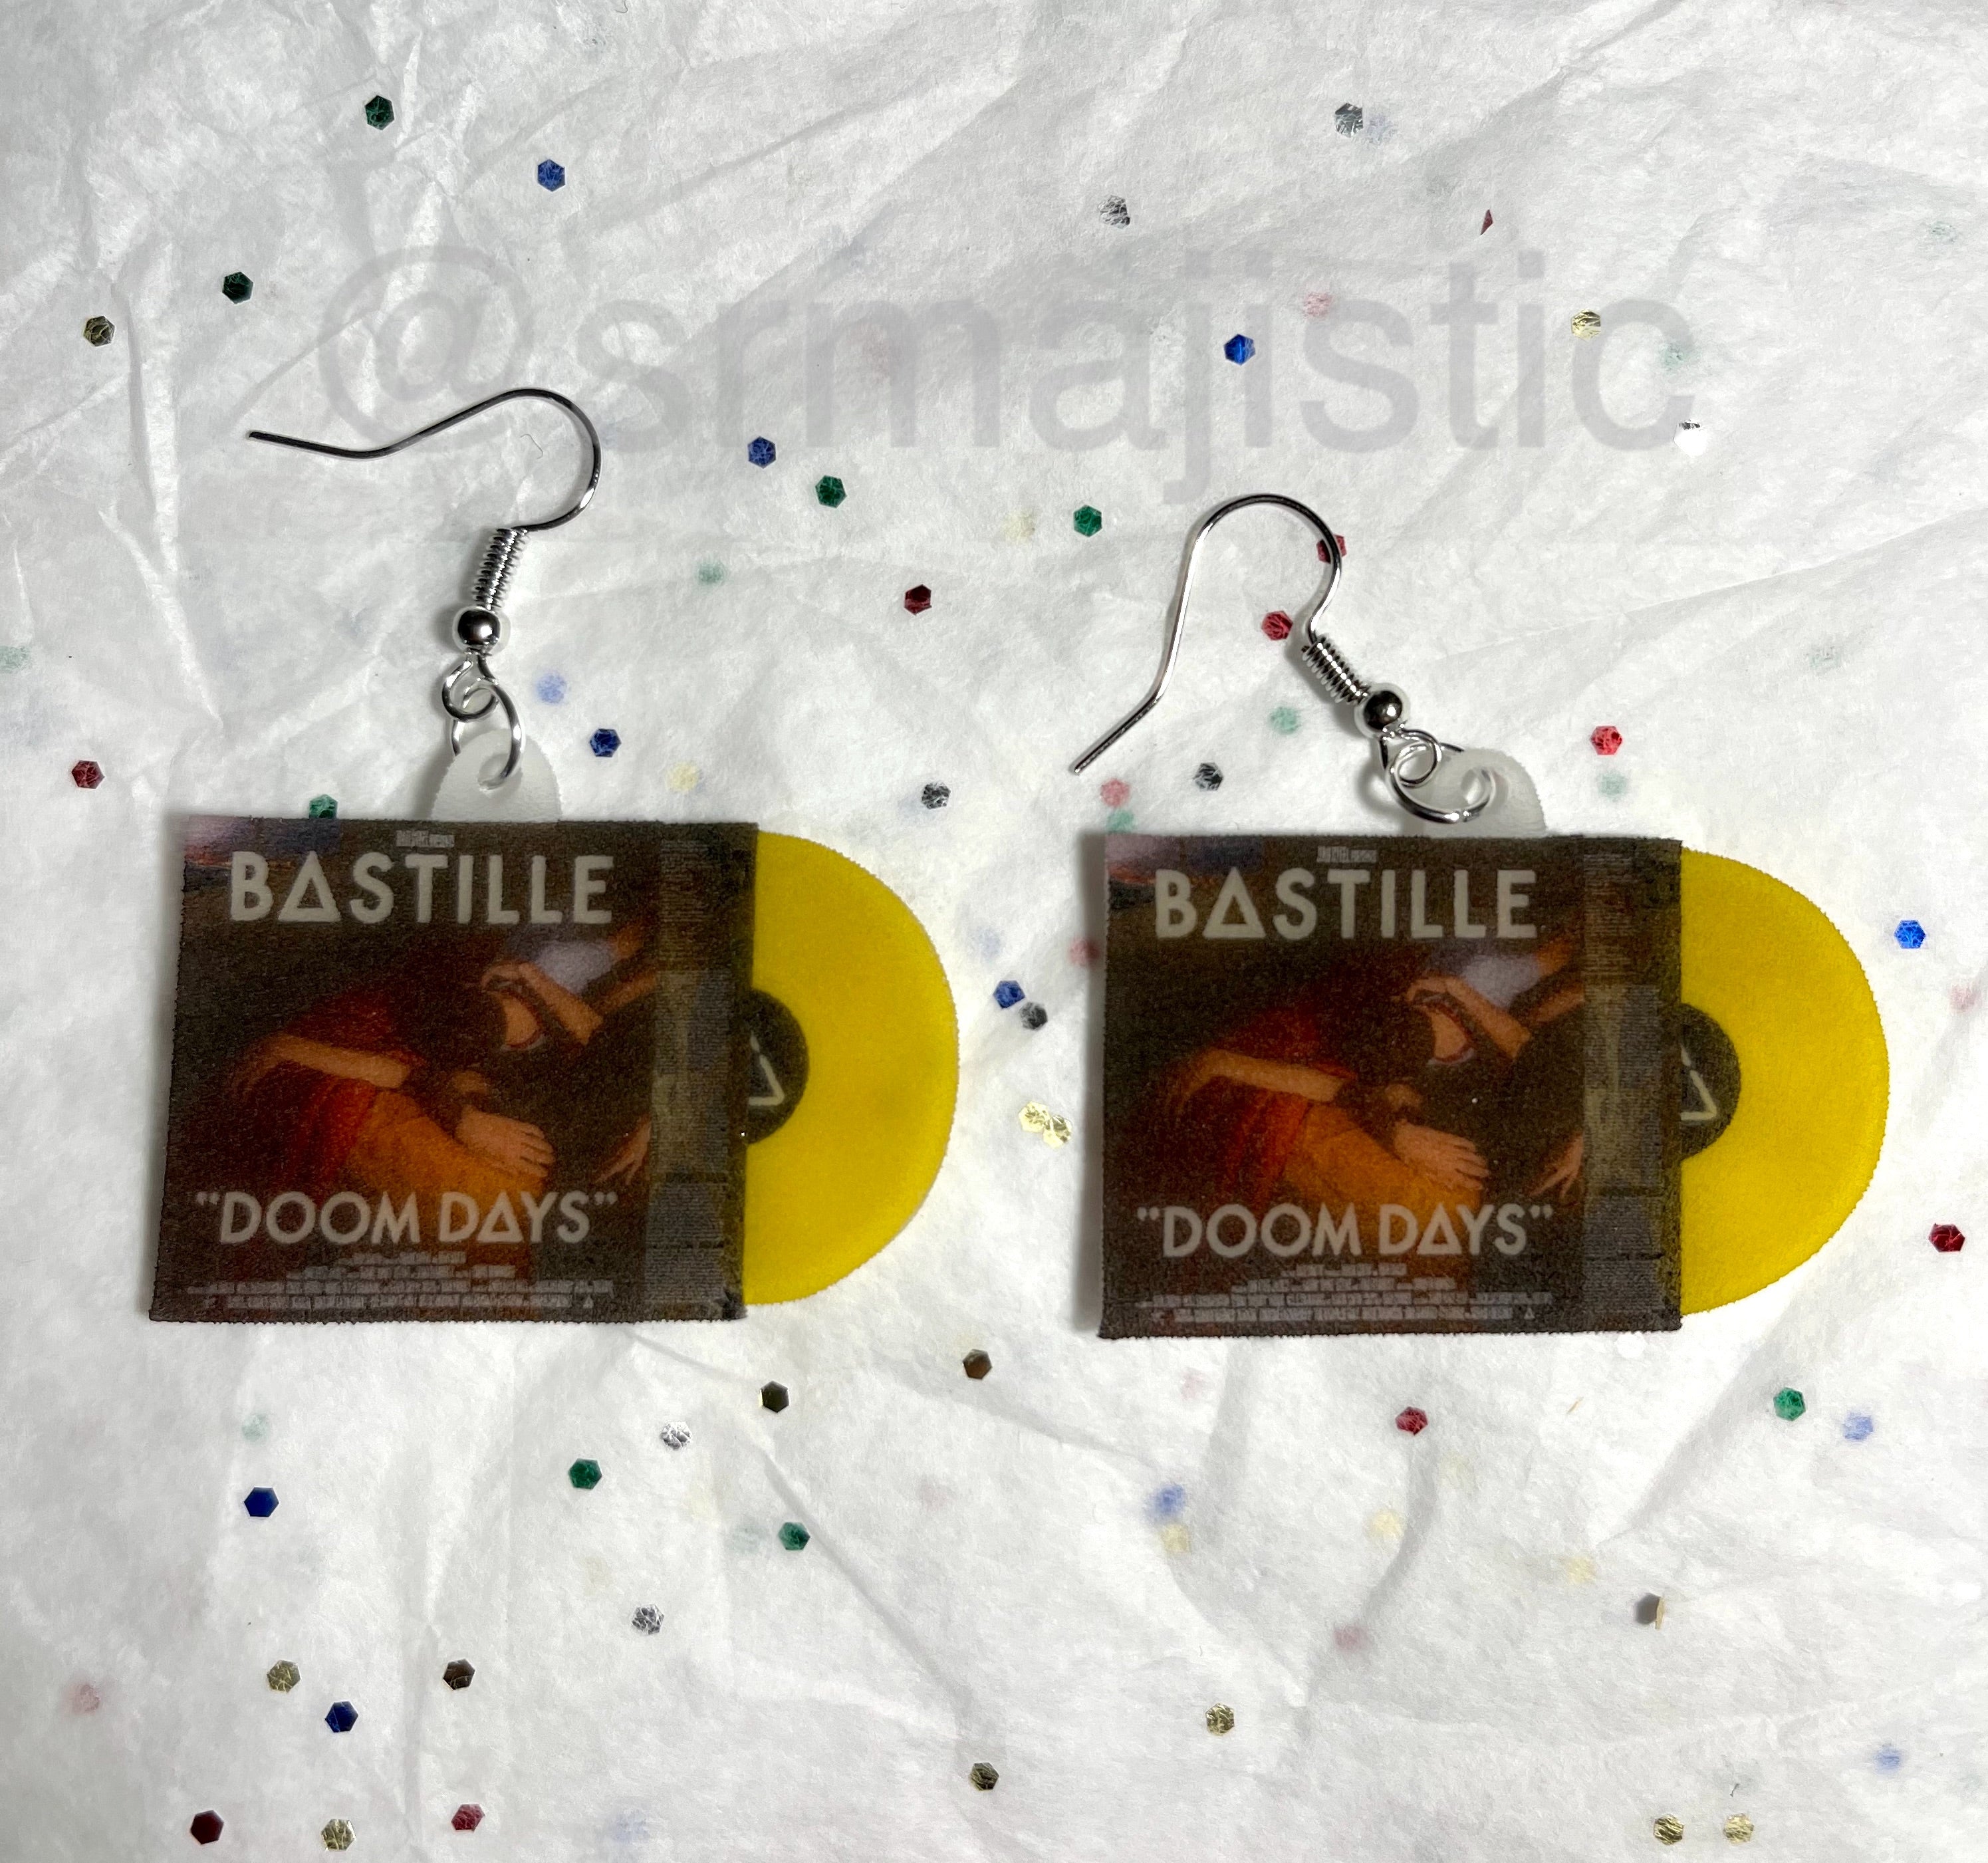 Bastille Doom Days Vinyl Album Handmade Earrings!